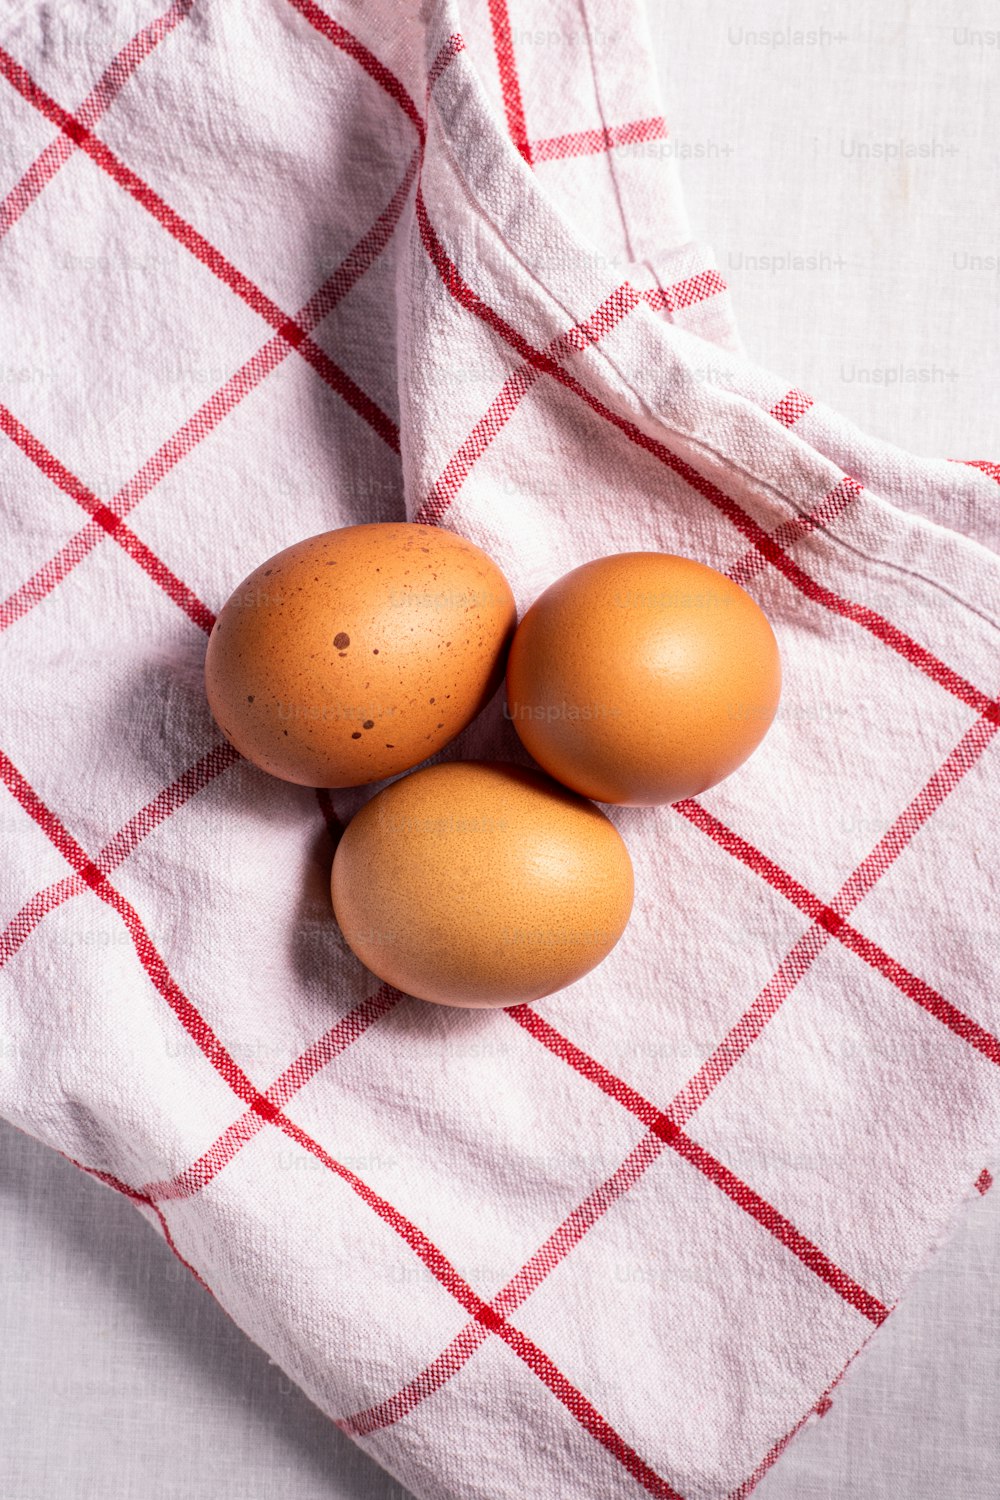 빨간색과 흰색 체크 무늬 수건에 갈색 달걀 3 개